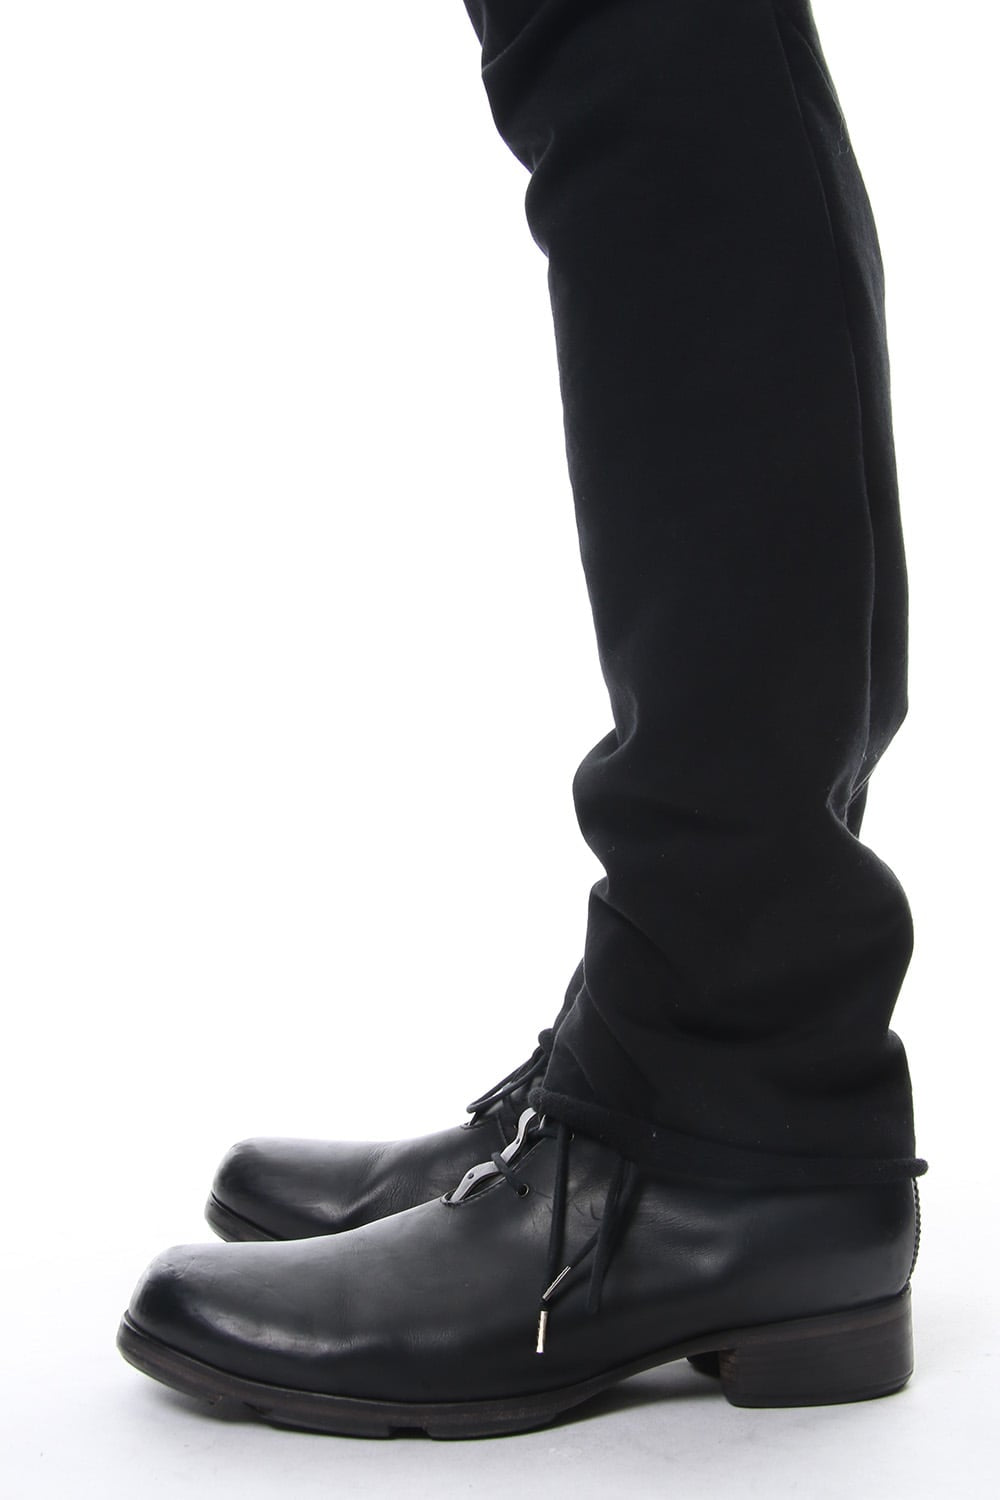 PTF-ASK-black | Jodhpurs Pants Cotton Stretch Jersey | DEVOA 